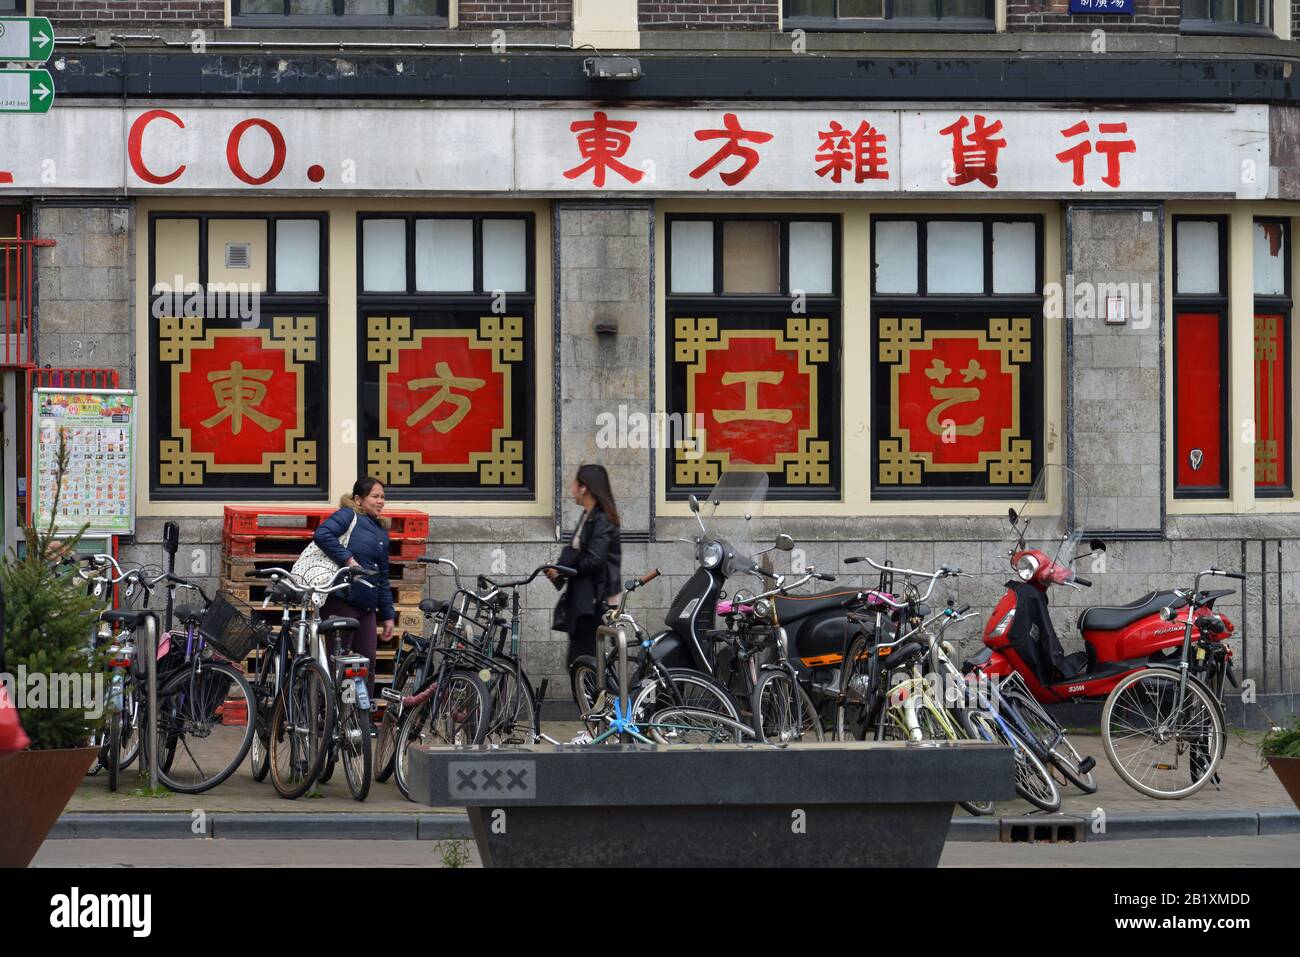 Chinesisches Geschaeft, Nieuwmarkt, Amsterdam, Niederlande Stock Photo